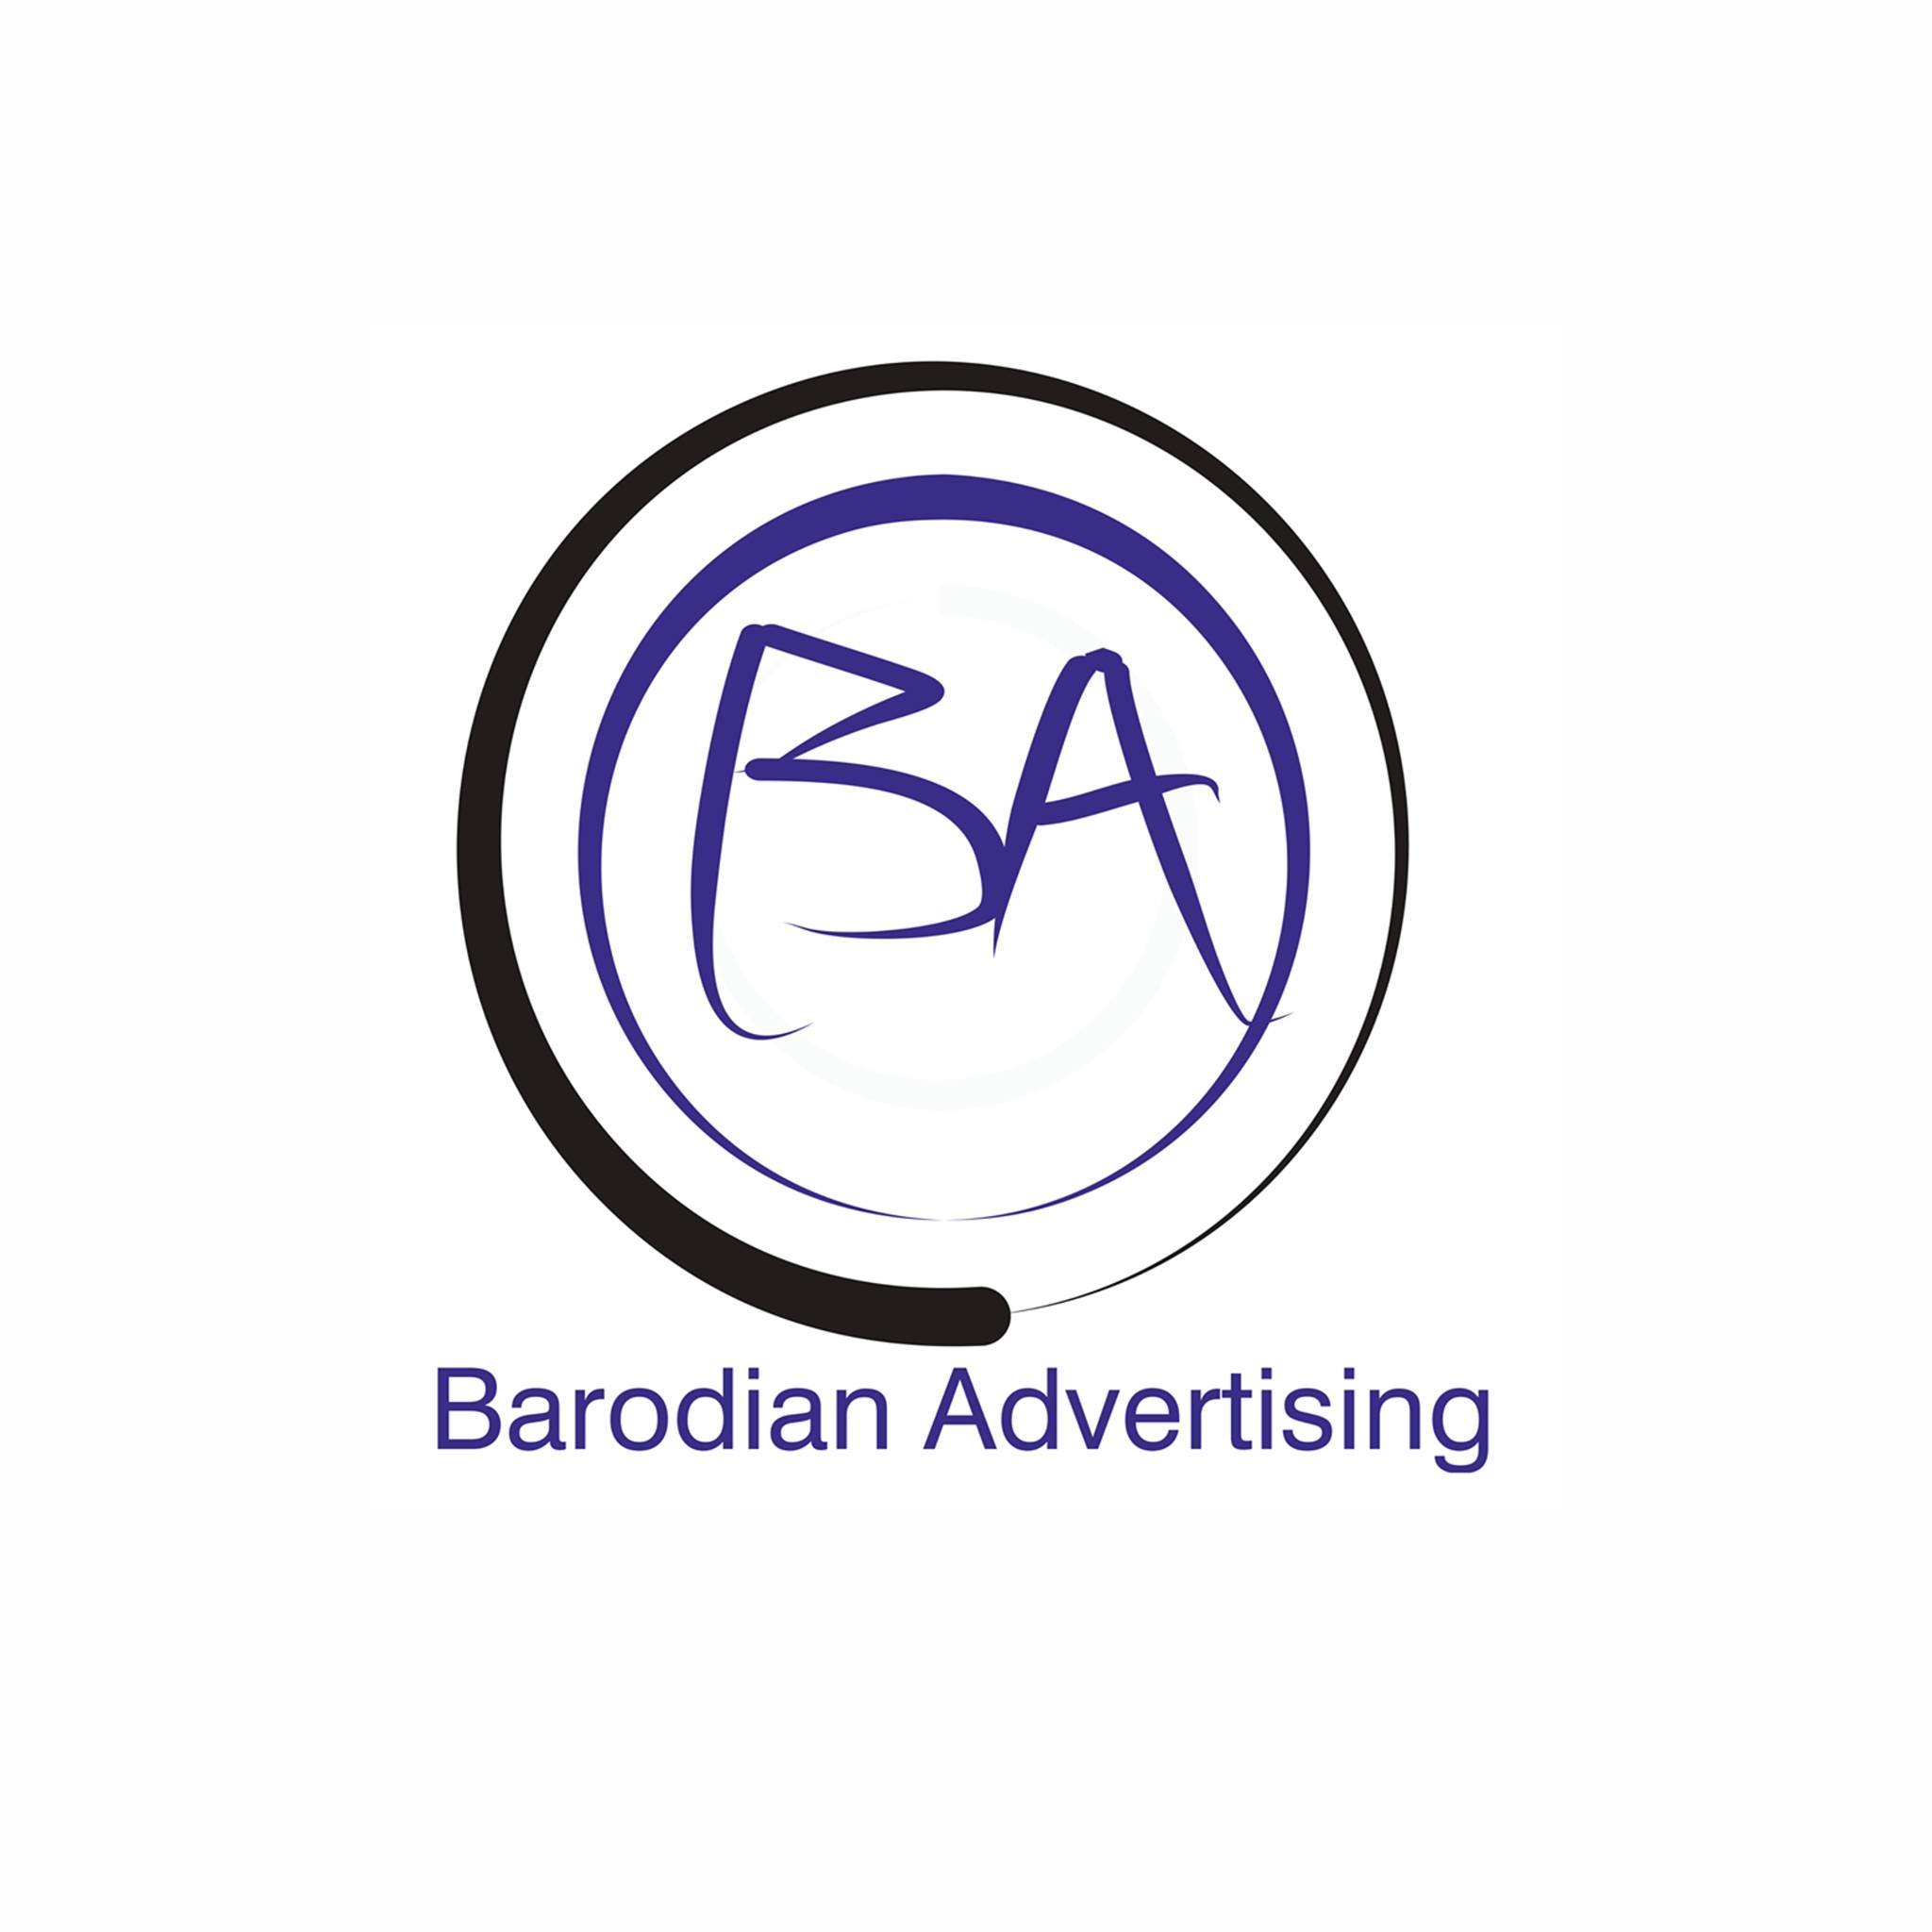 Barodian Advertising